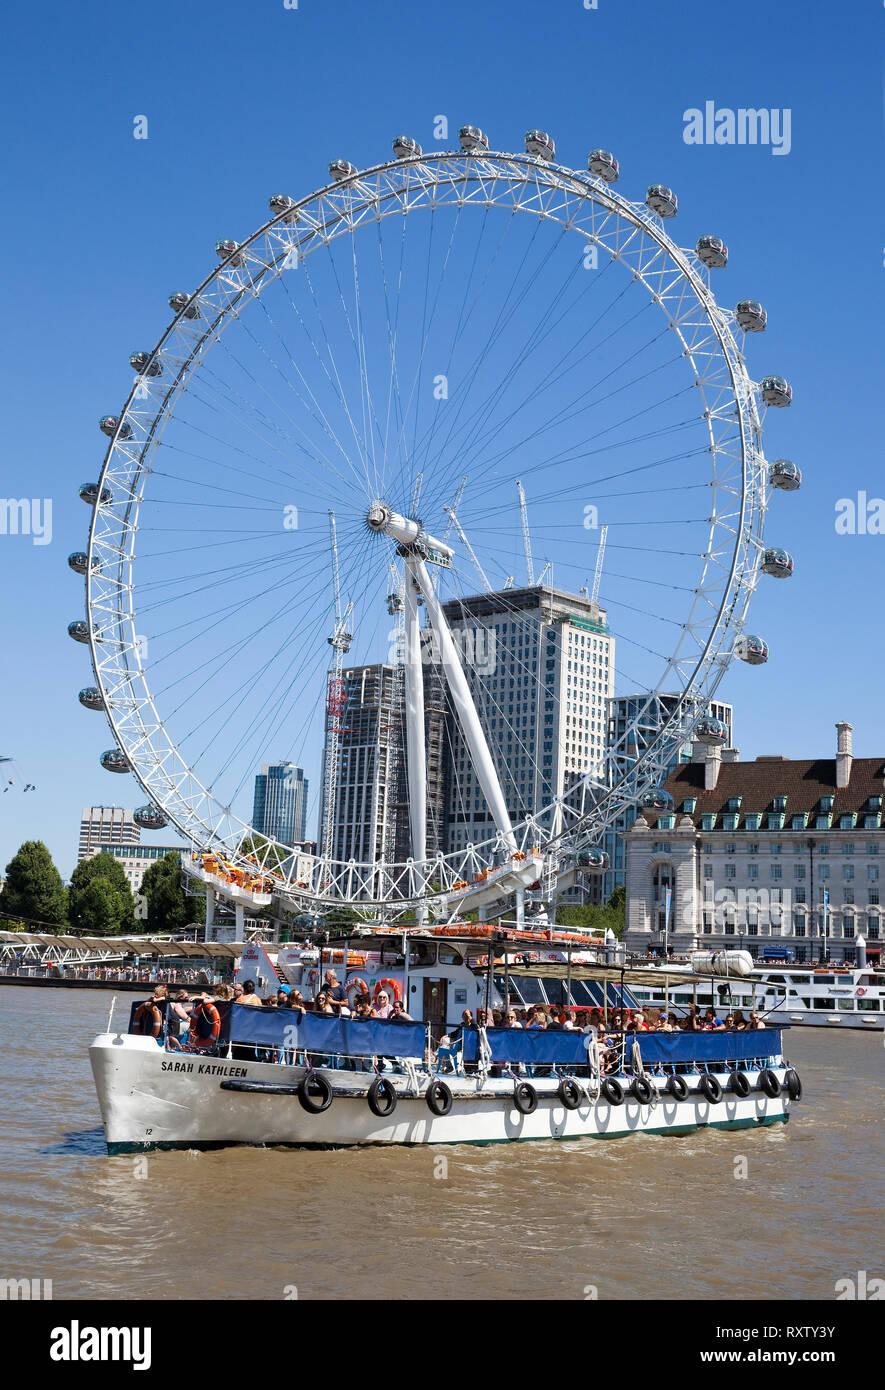 Atracción turística popular, el London Eye es una noria gigante en la orilla sur del río Támesis. Londres, Reino Unido Foto de stock